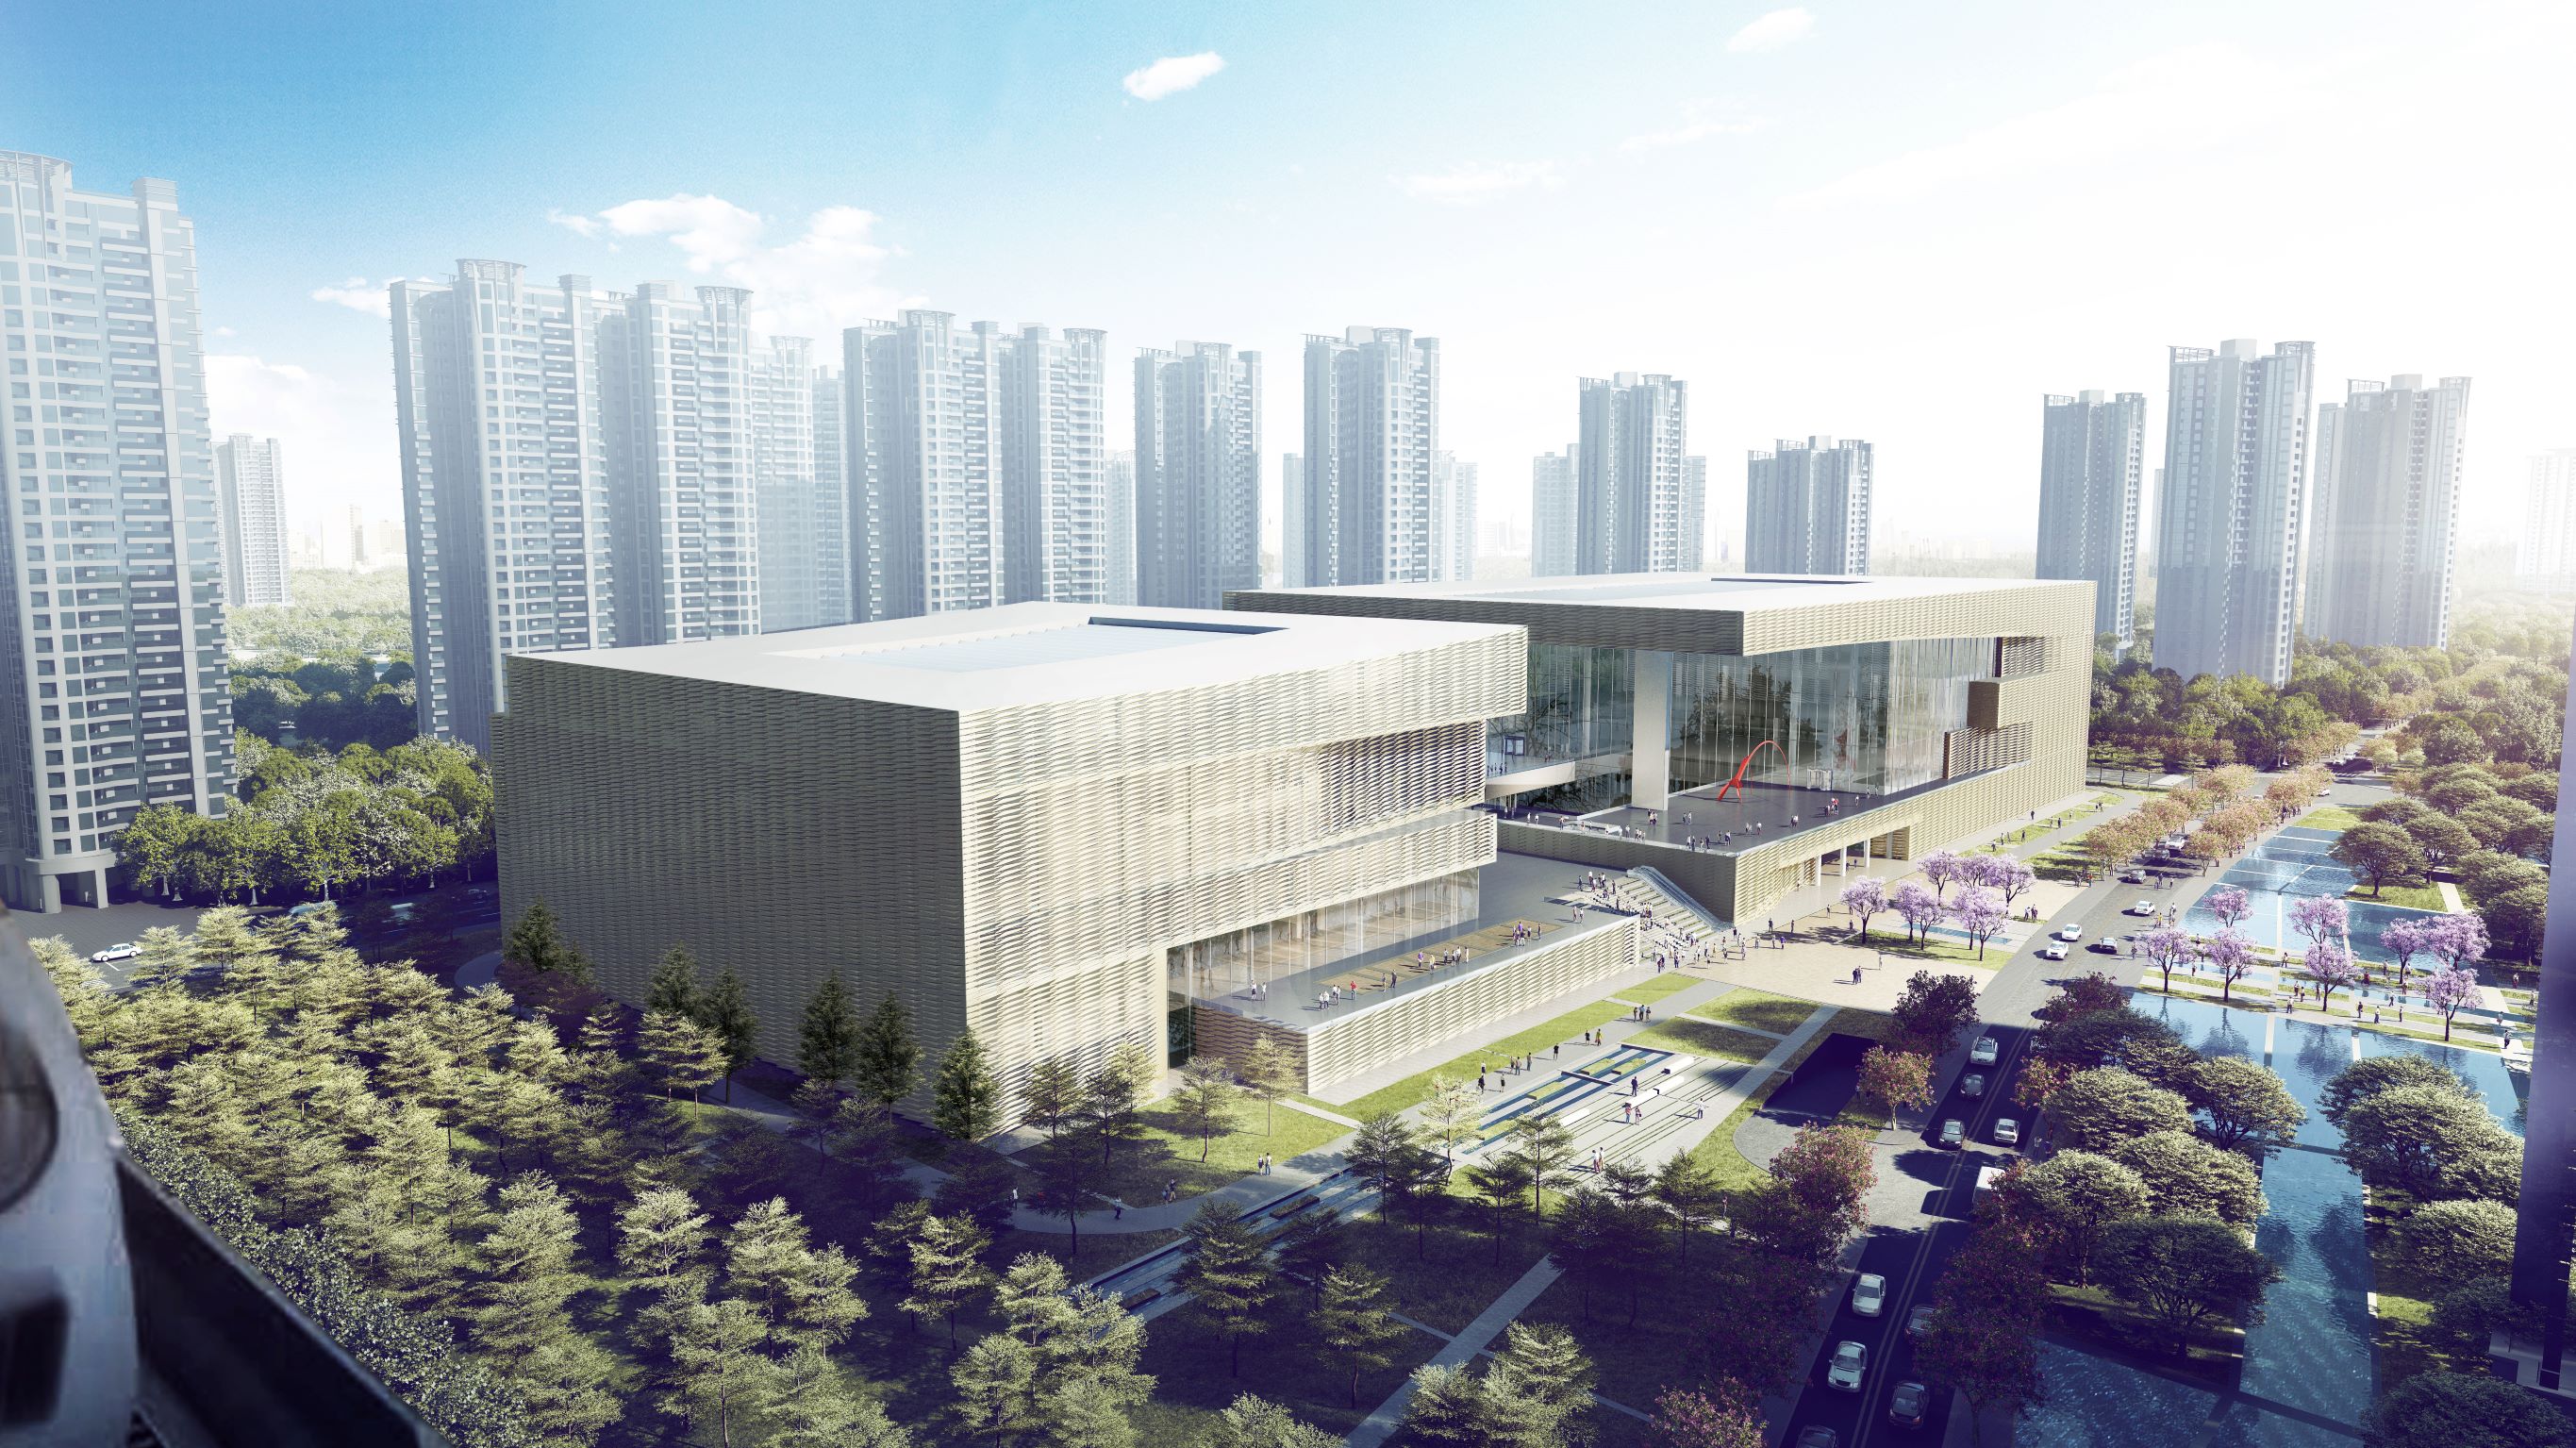 中建三局承建的深圳美术馆新馆、第二图书馆主体结构封顶